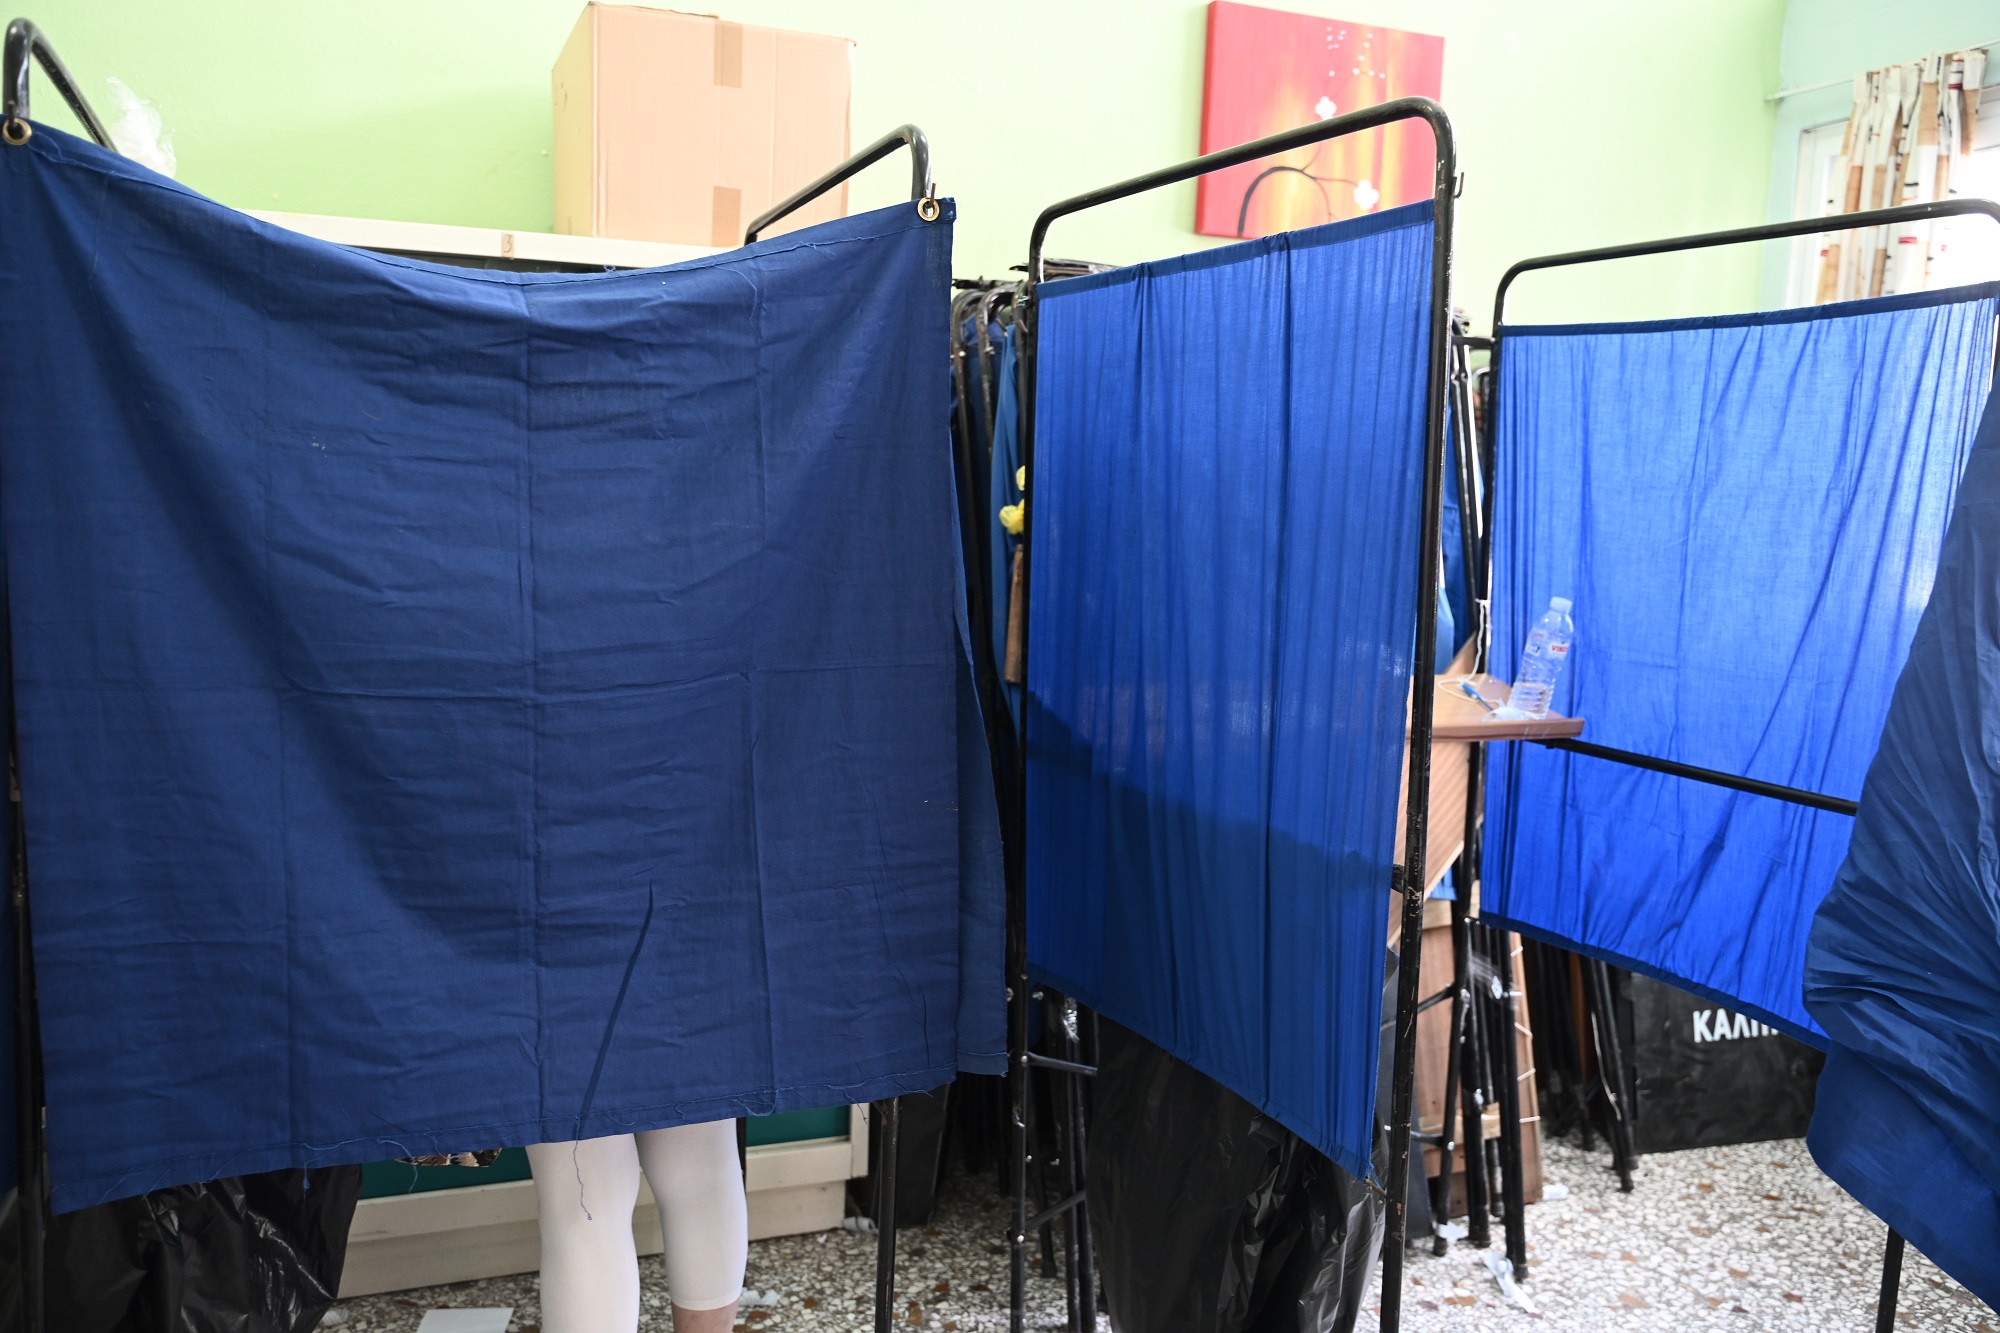 Αυτοδιοικητικές εκλογές: Μ. Σταυριανουδάκης:Τι είπε για την αποζημίωση των μελών των εφορευτικών επιτροπών – Πώς θα ψηφίσουν οι πλημμυροπαθείς